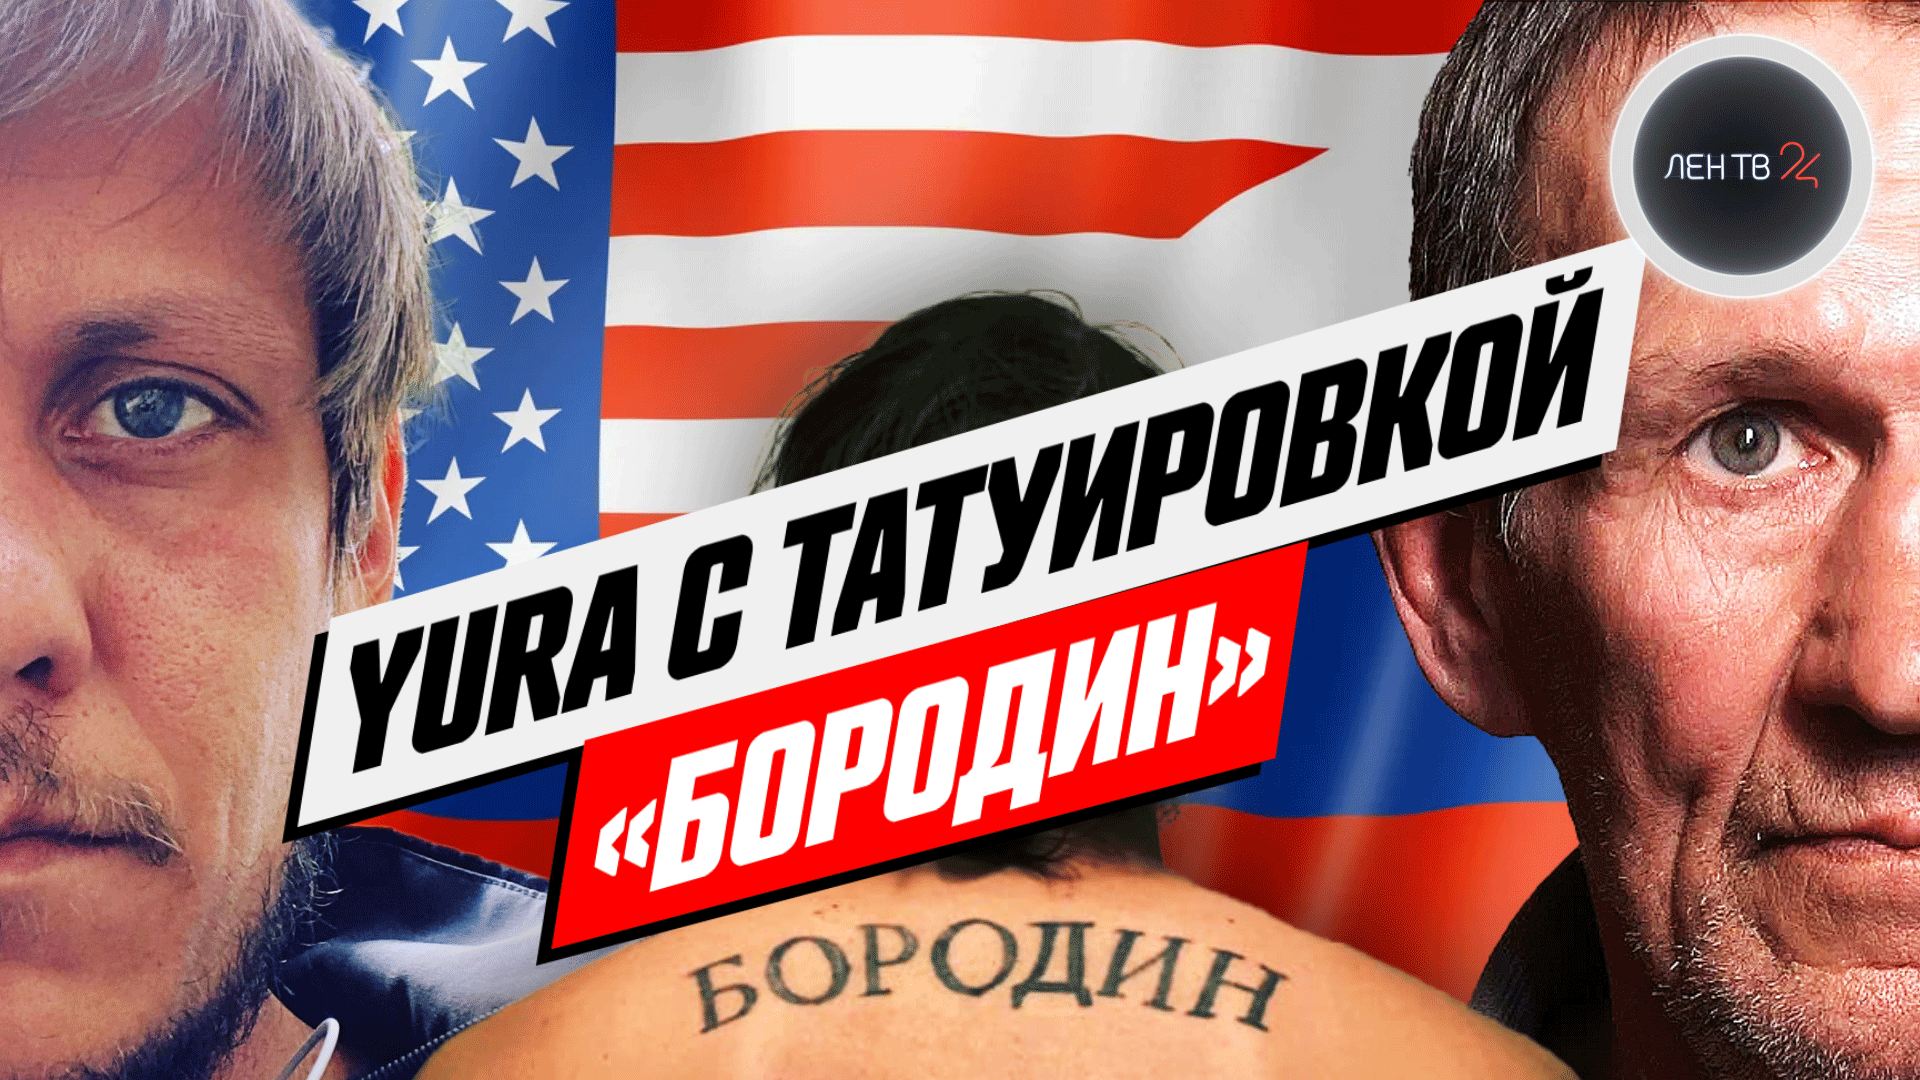 Американец ищет родителей в России | Юра с татуировкой Бородин